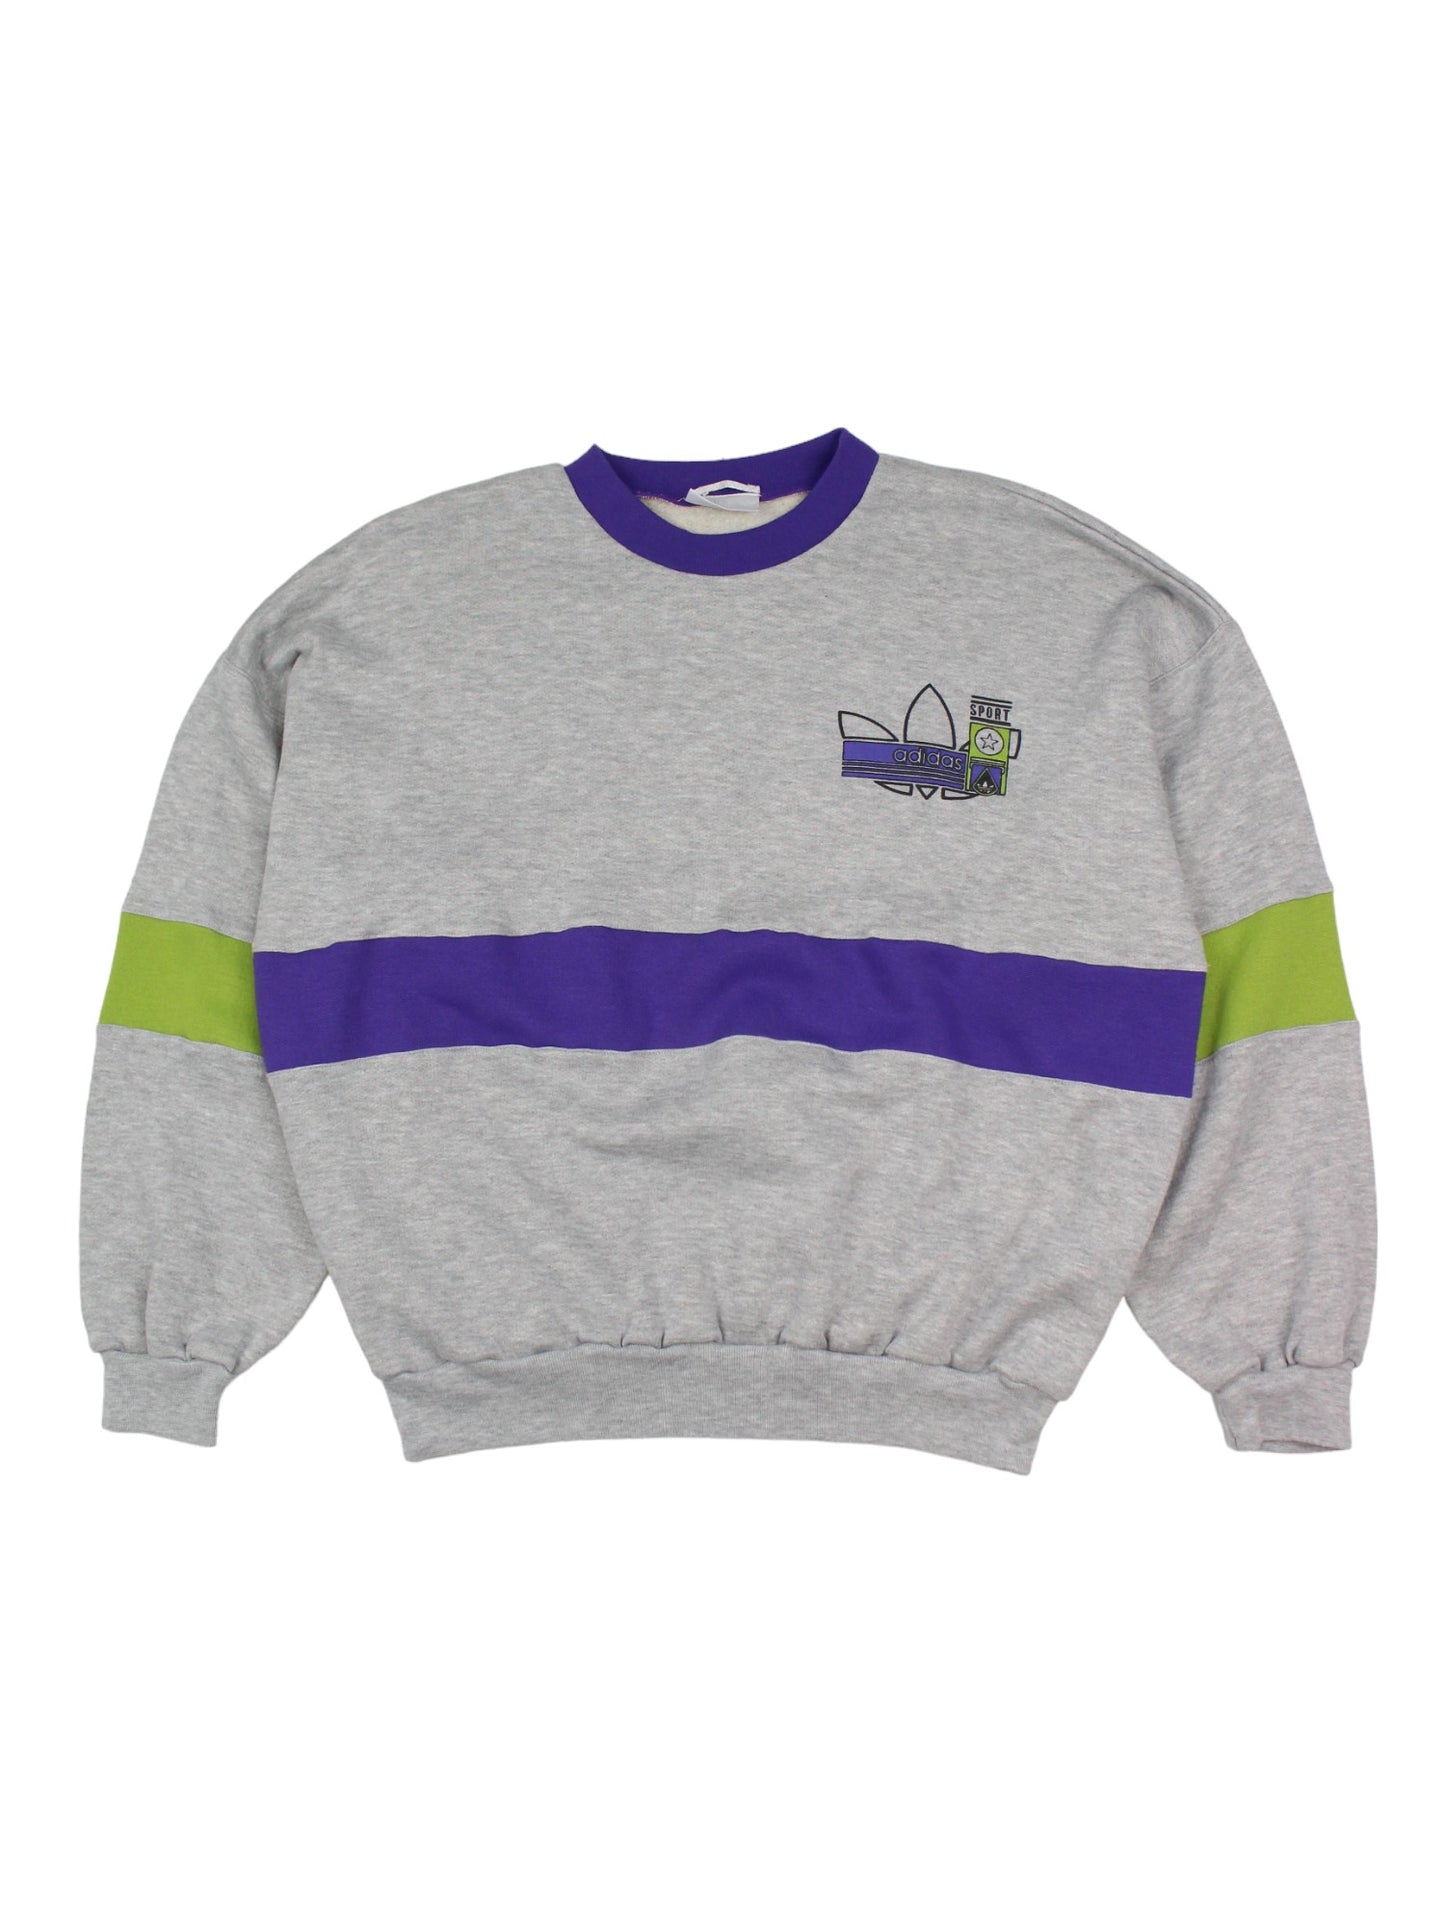 90s Adidas Grey Sweatshirt (S)